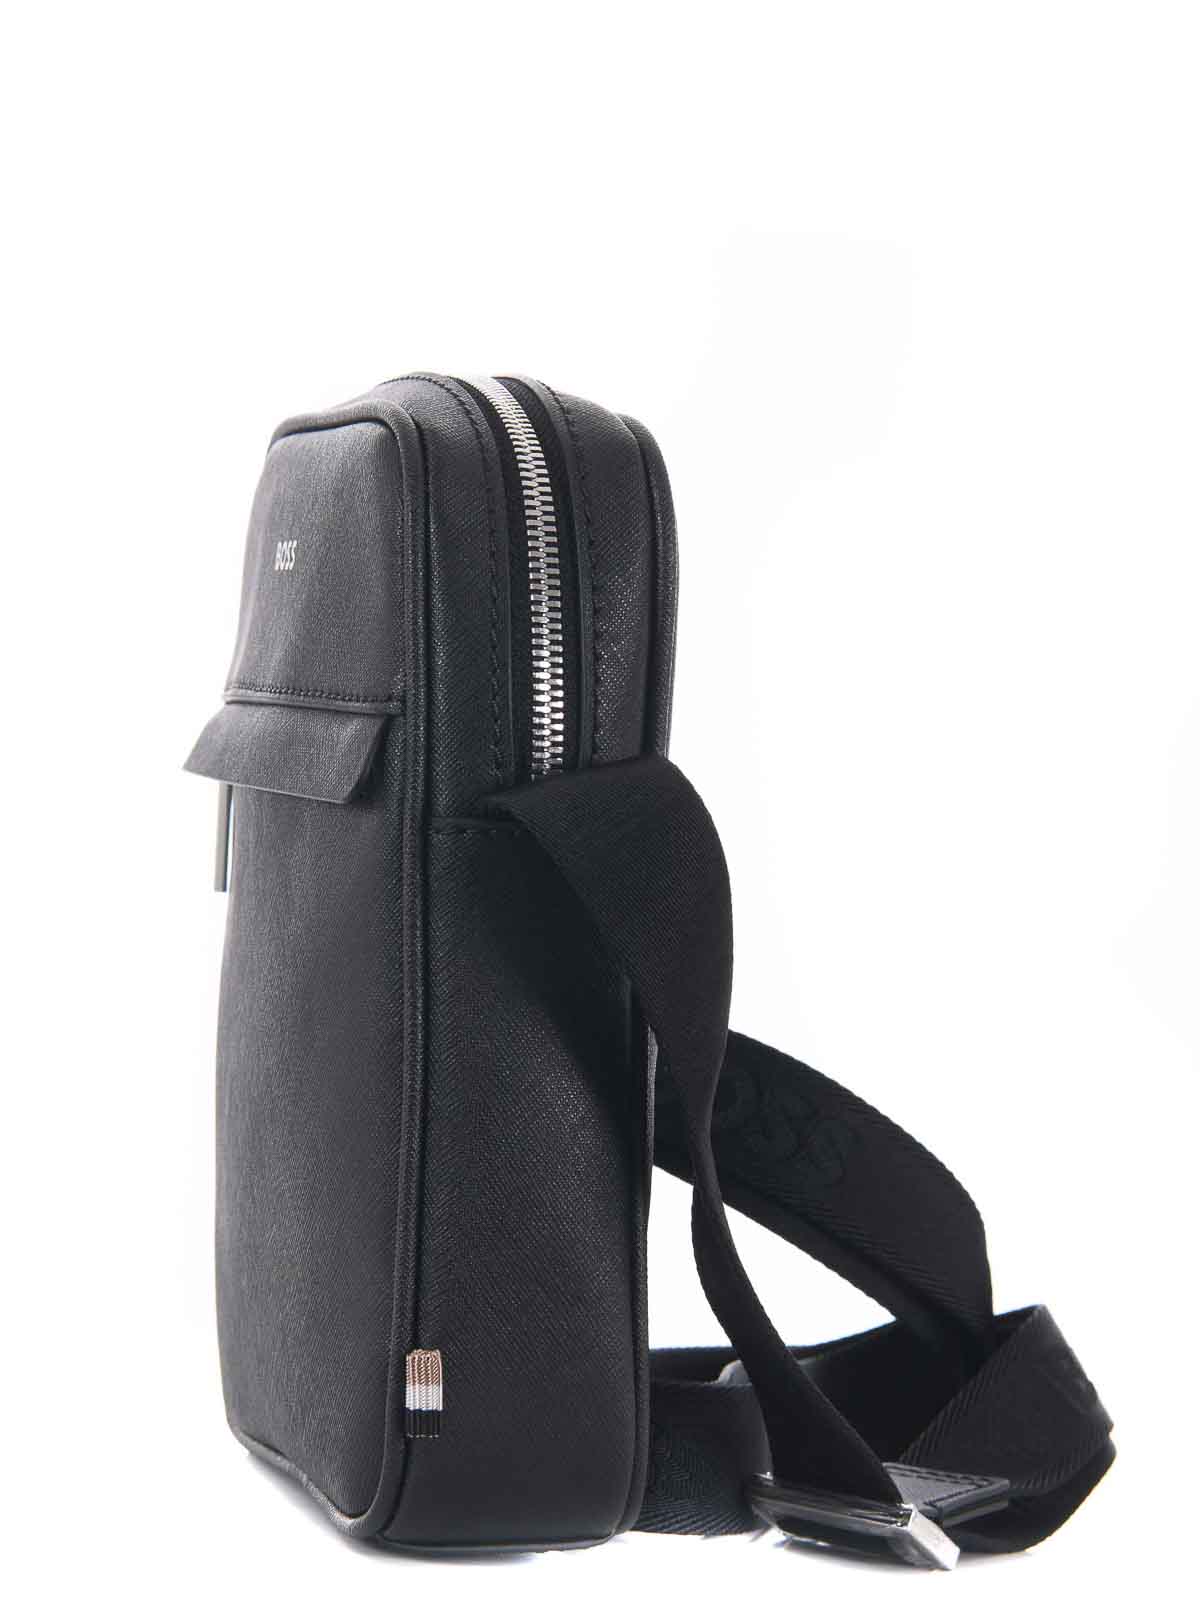 Shop Hugo Boss Shoulder Bag In Black